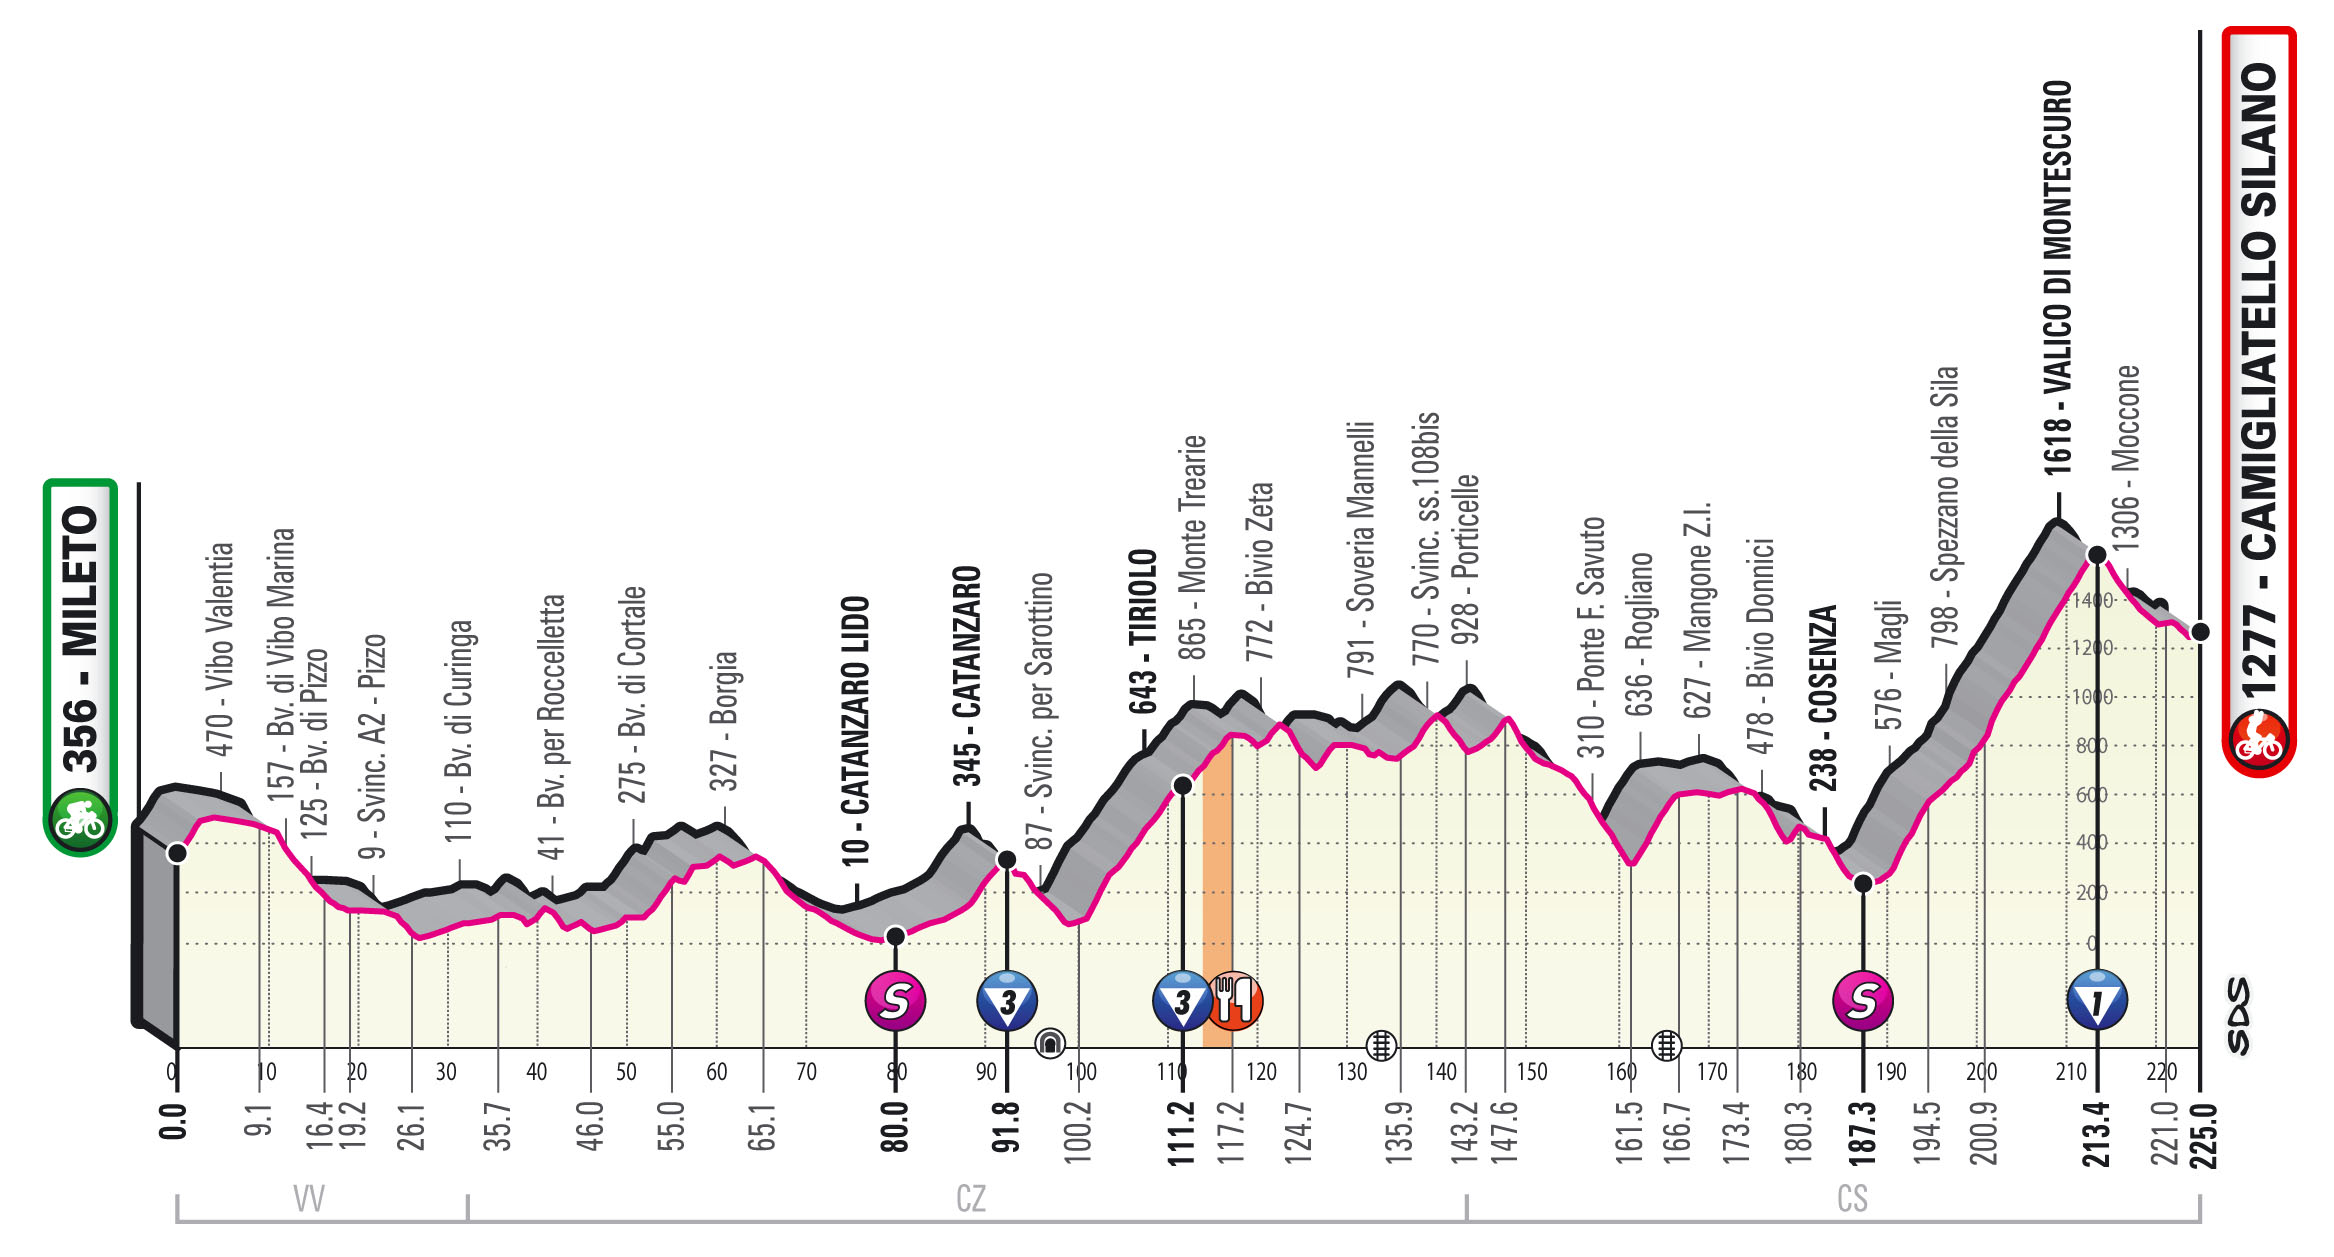 Giro 2020 etappe 5